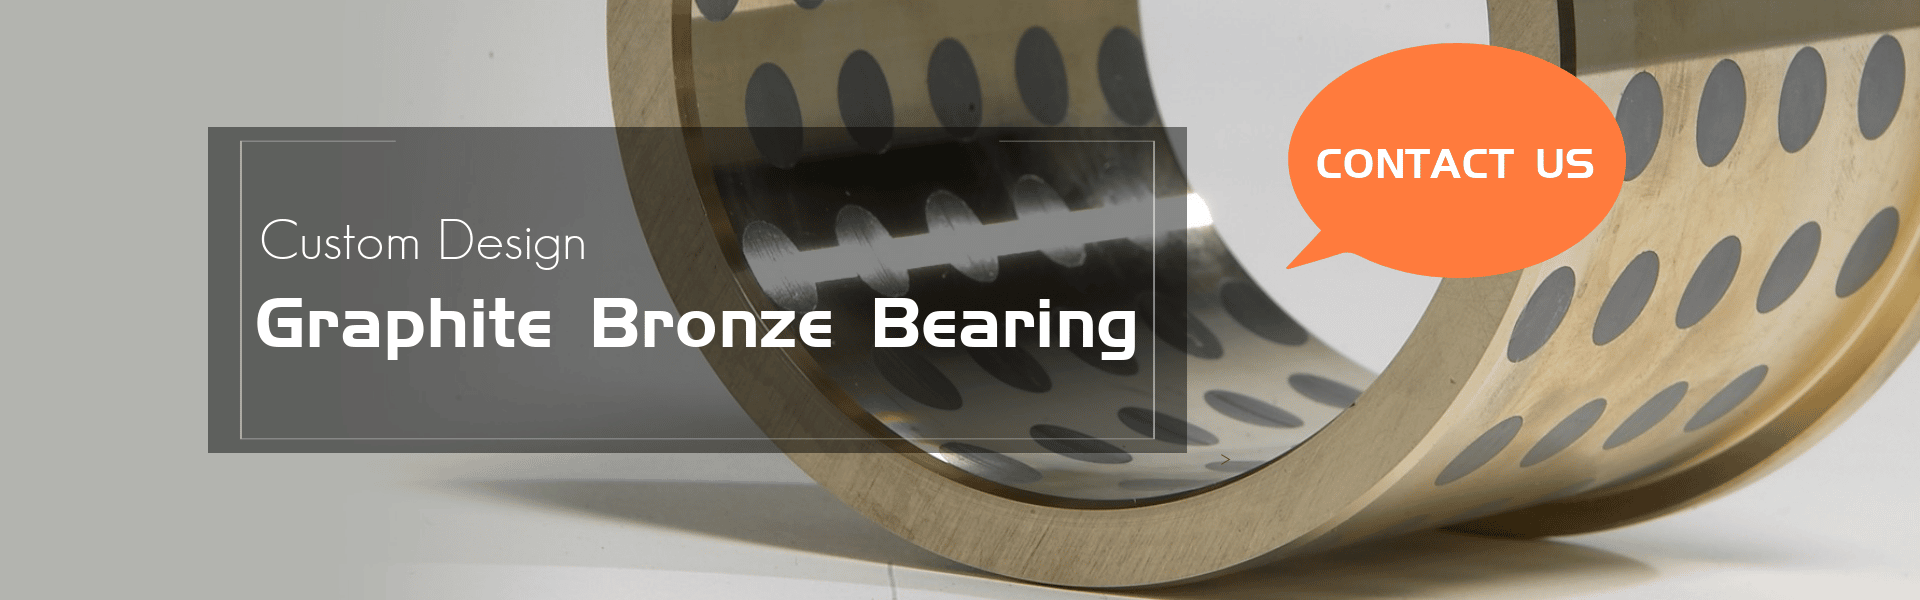 graphite bronze bearing